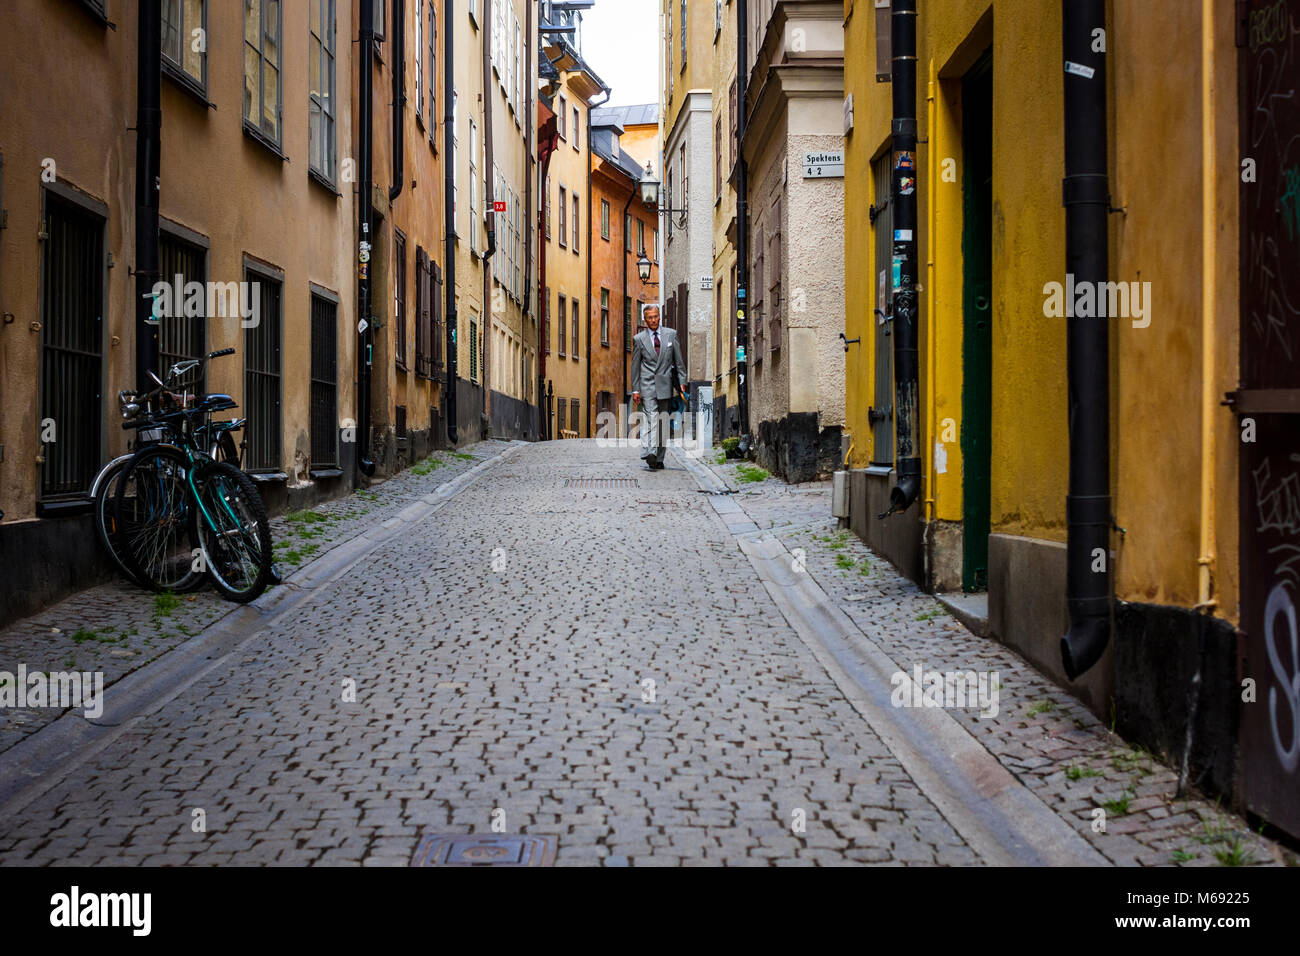 A businessman walks through Gamla Stan in Stockholm, Sweden. Stock Photo